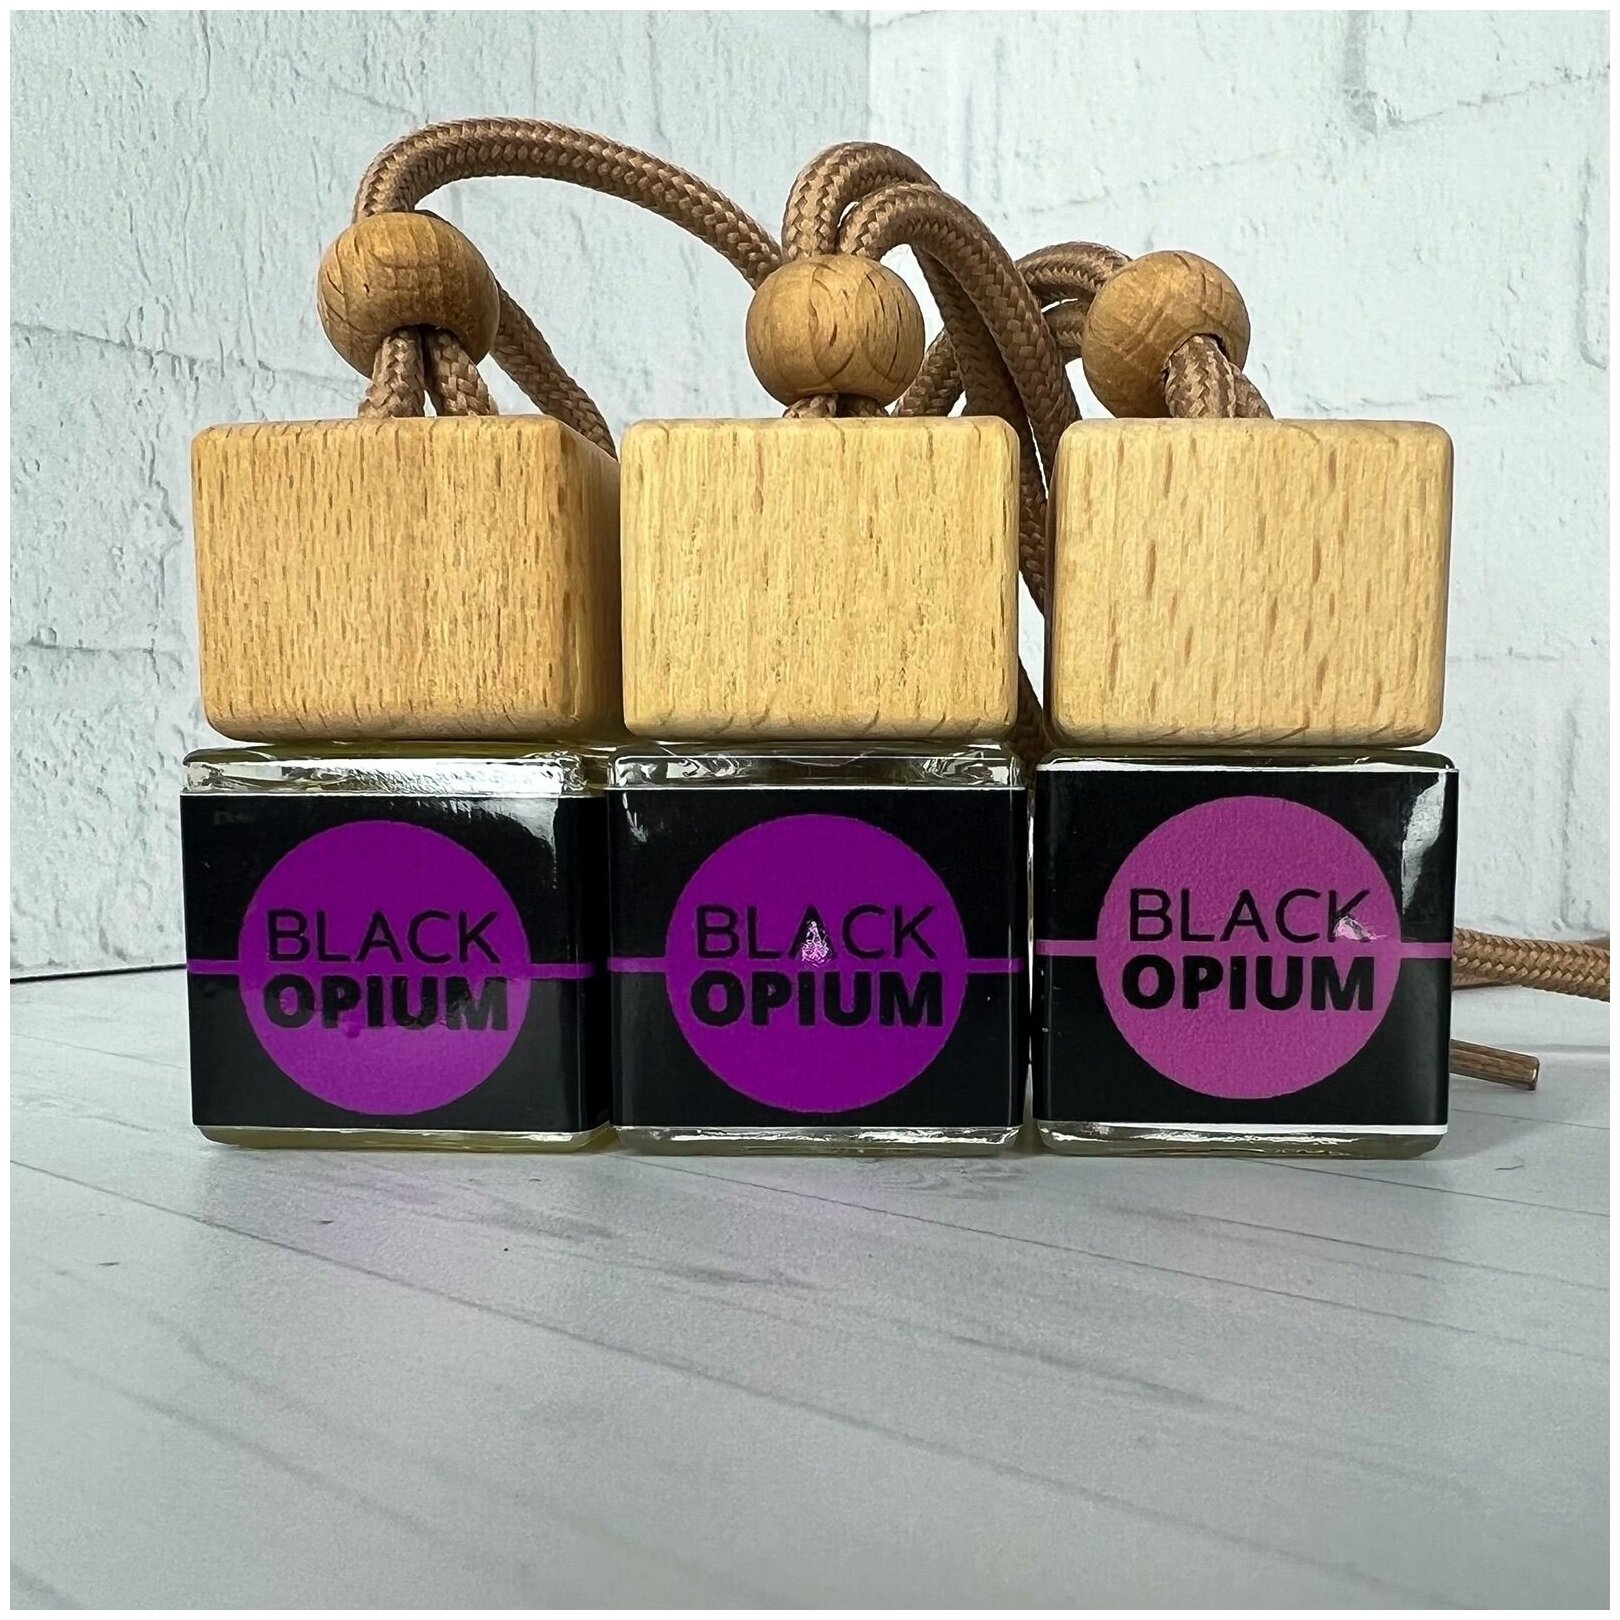 Ароматизатор для автомобиля и дома Black Opium (8мл) автопарфюм мужской женский освежитель воздуха пахучка вонючка в машину подарок